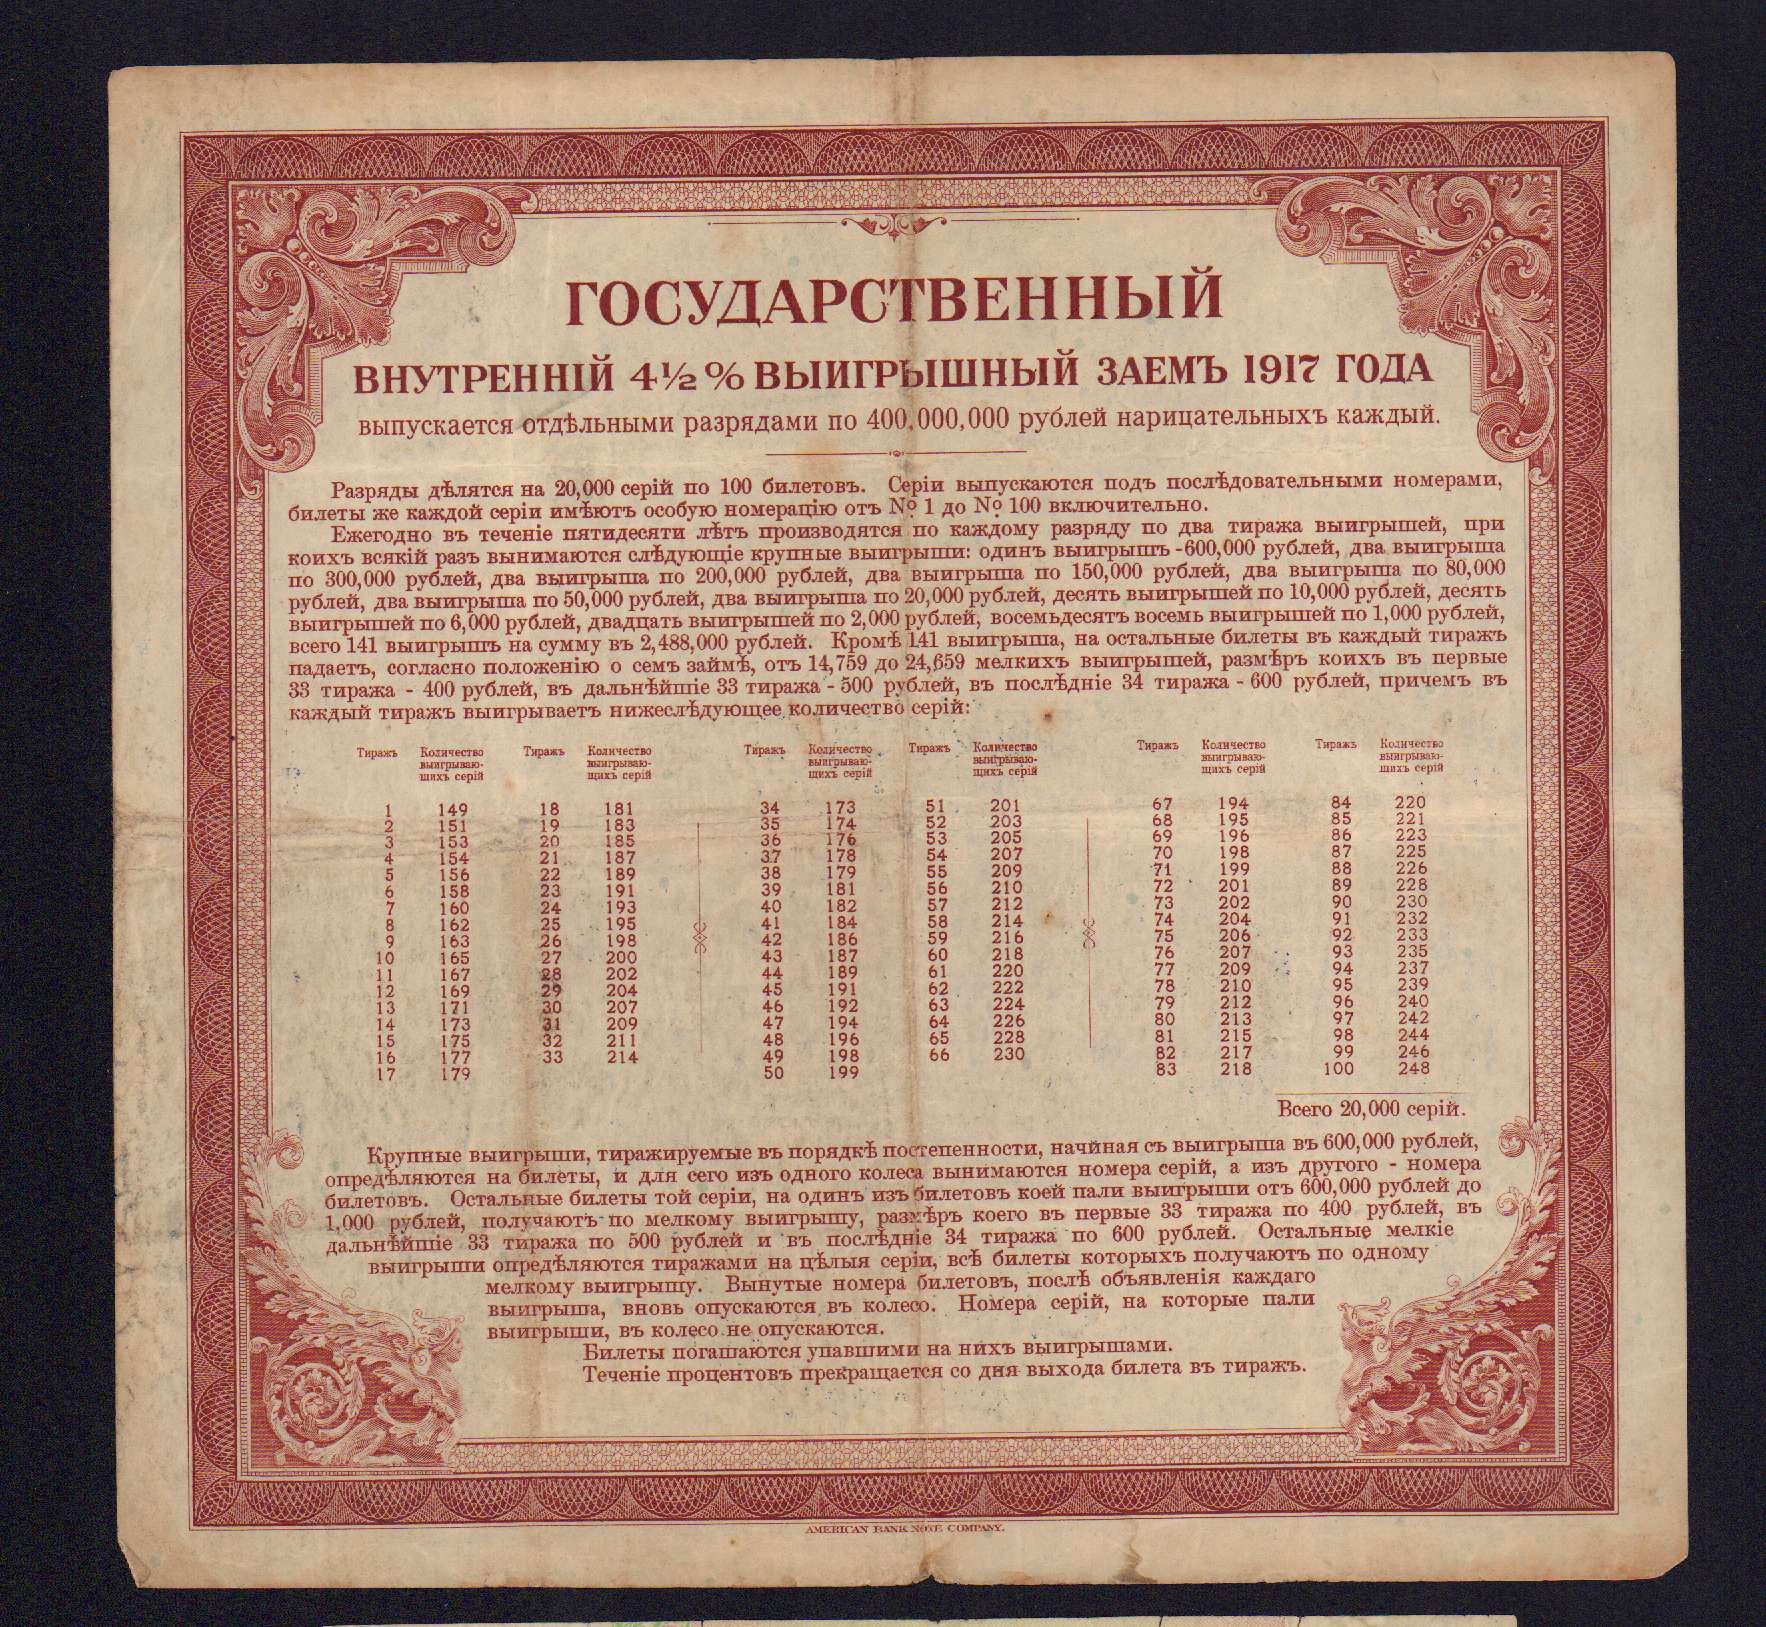 Государственный заем 1982 года. Выигрышный заём. Государственный внутренний выигрышный заем 1982 года 50 рублей. Государственный внутренний 4 1/2 % выигрышный заем. Выигрышный займ 1924.